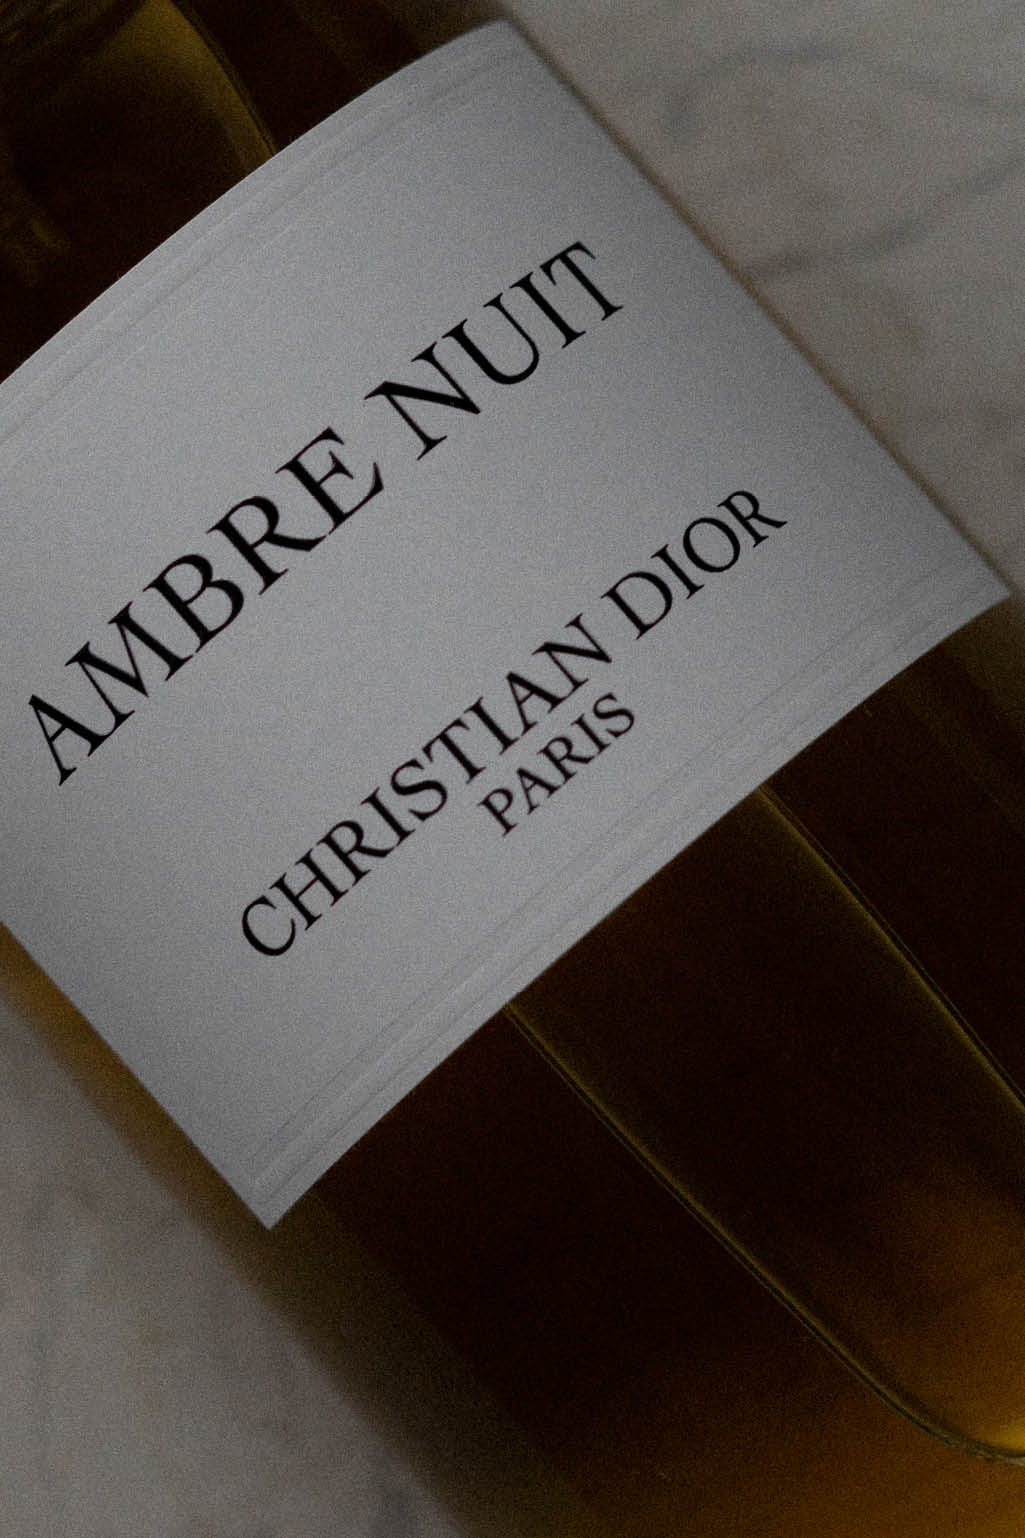 Maison Christian Dior, Ambre Nuit